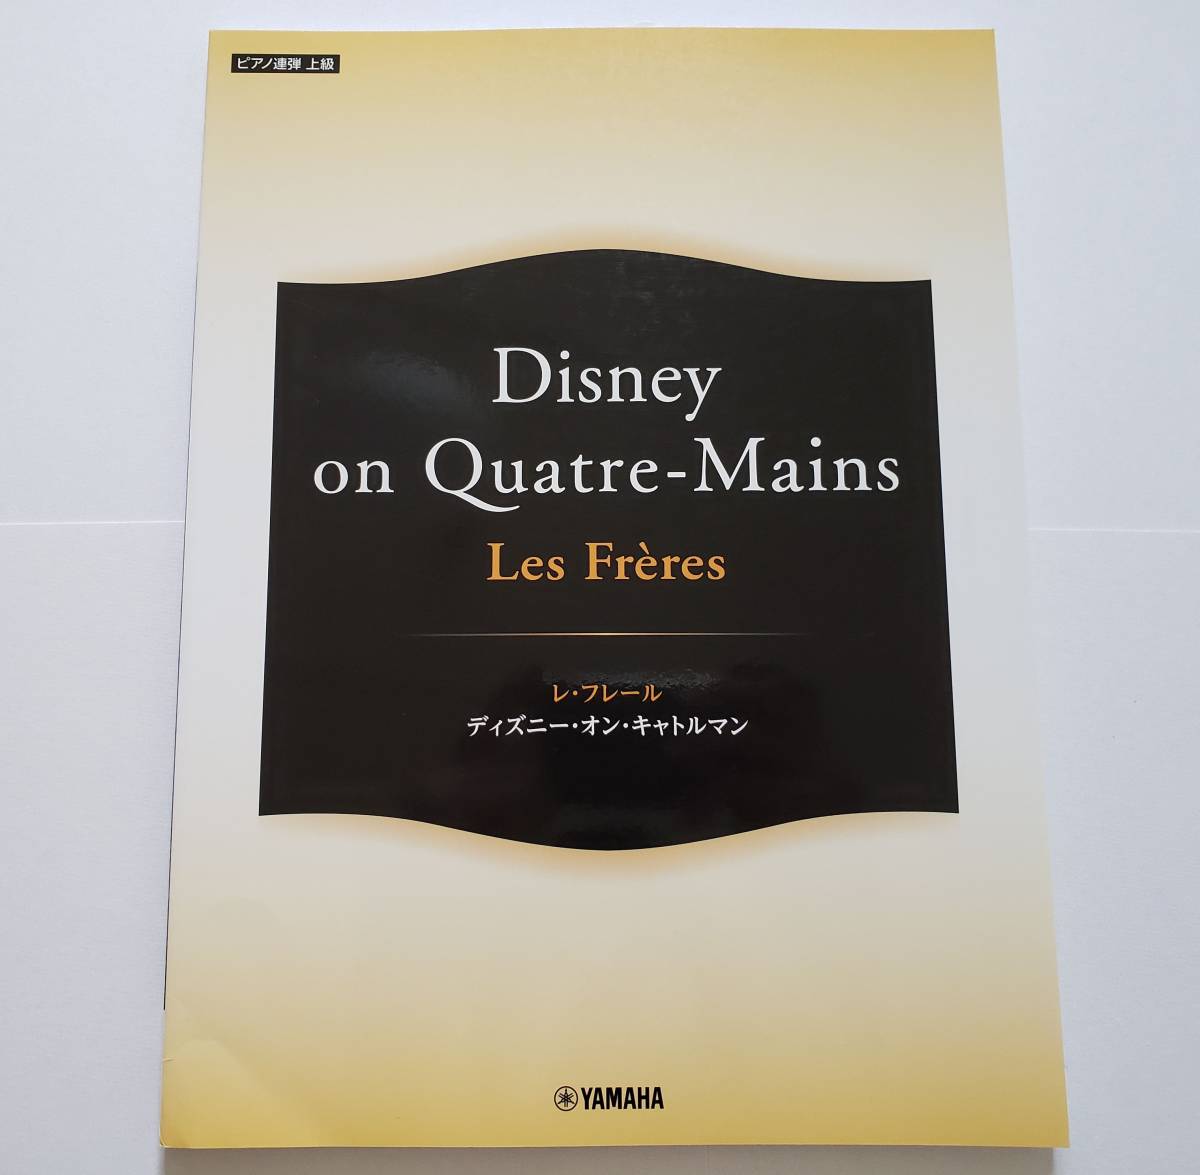 【爆買い！】 Freres Les ディズニー・オン・キャトルマン レ・フレール 上級 ピアノ連弾 Disney スコア ピアノ メドレー デュオ 楽譜 Quatre-Mains on その他